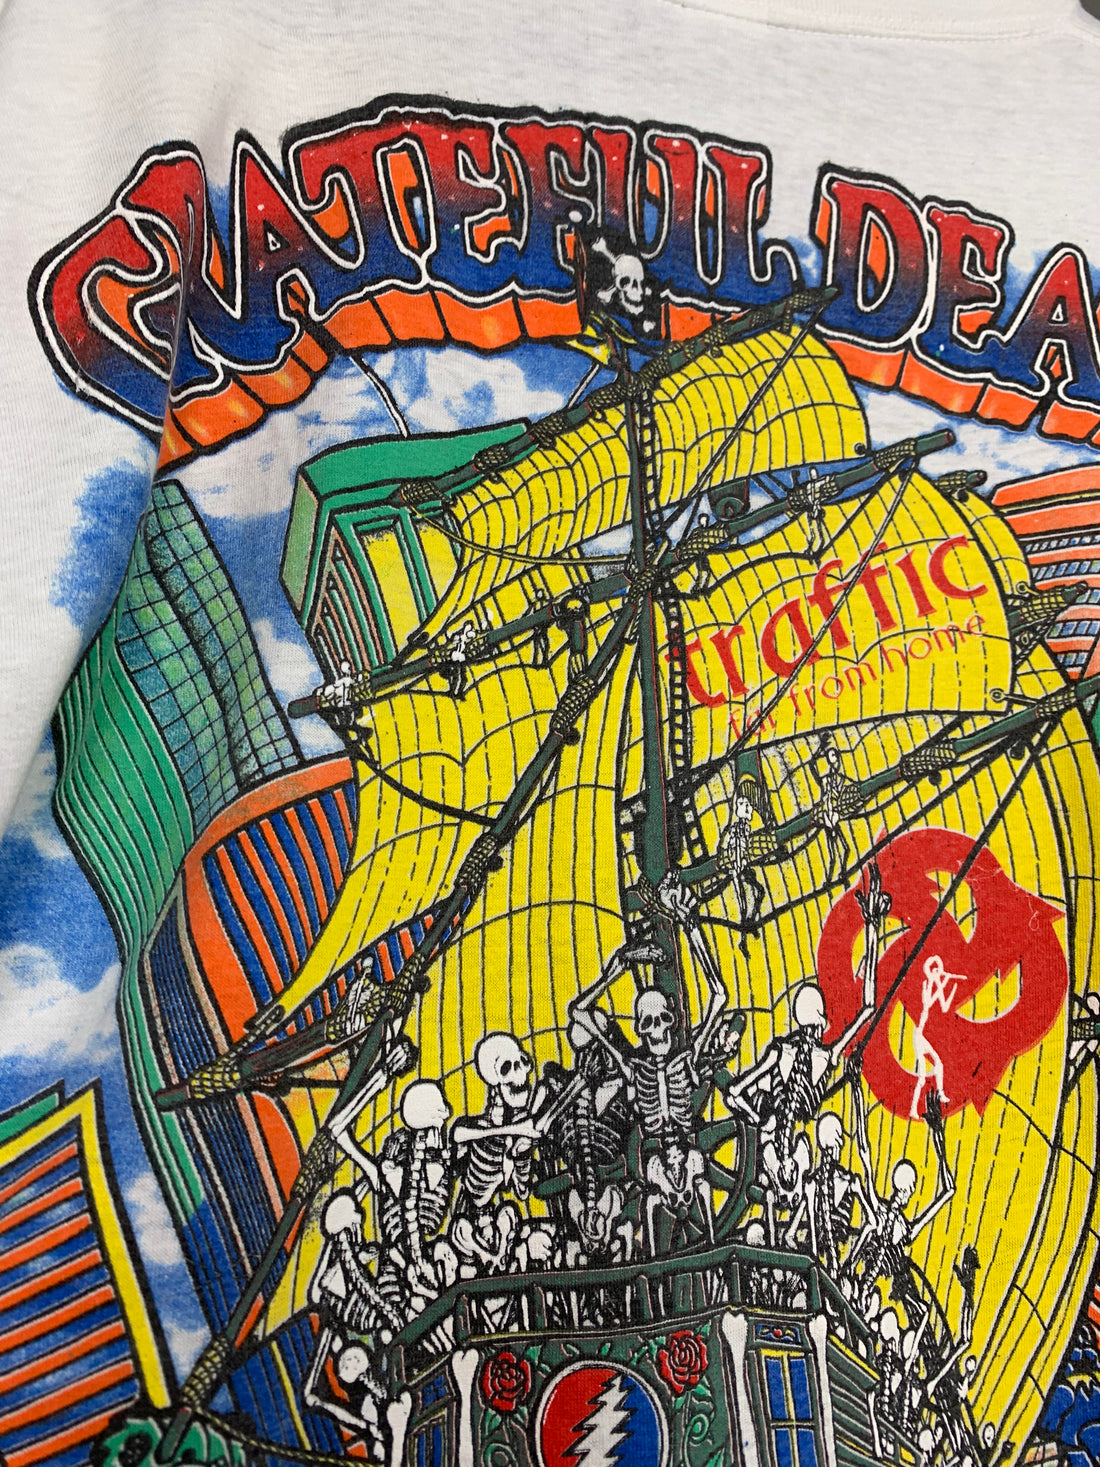 Grateful Dead 1994 Summer Tour Vintage T-Shirt